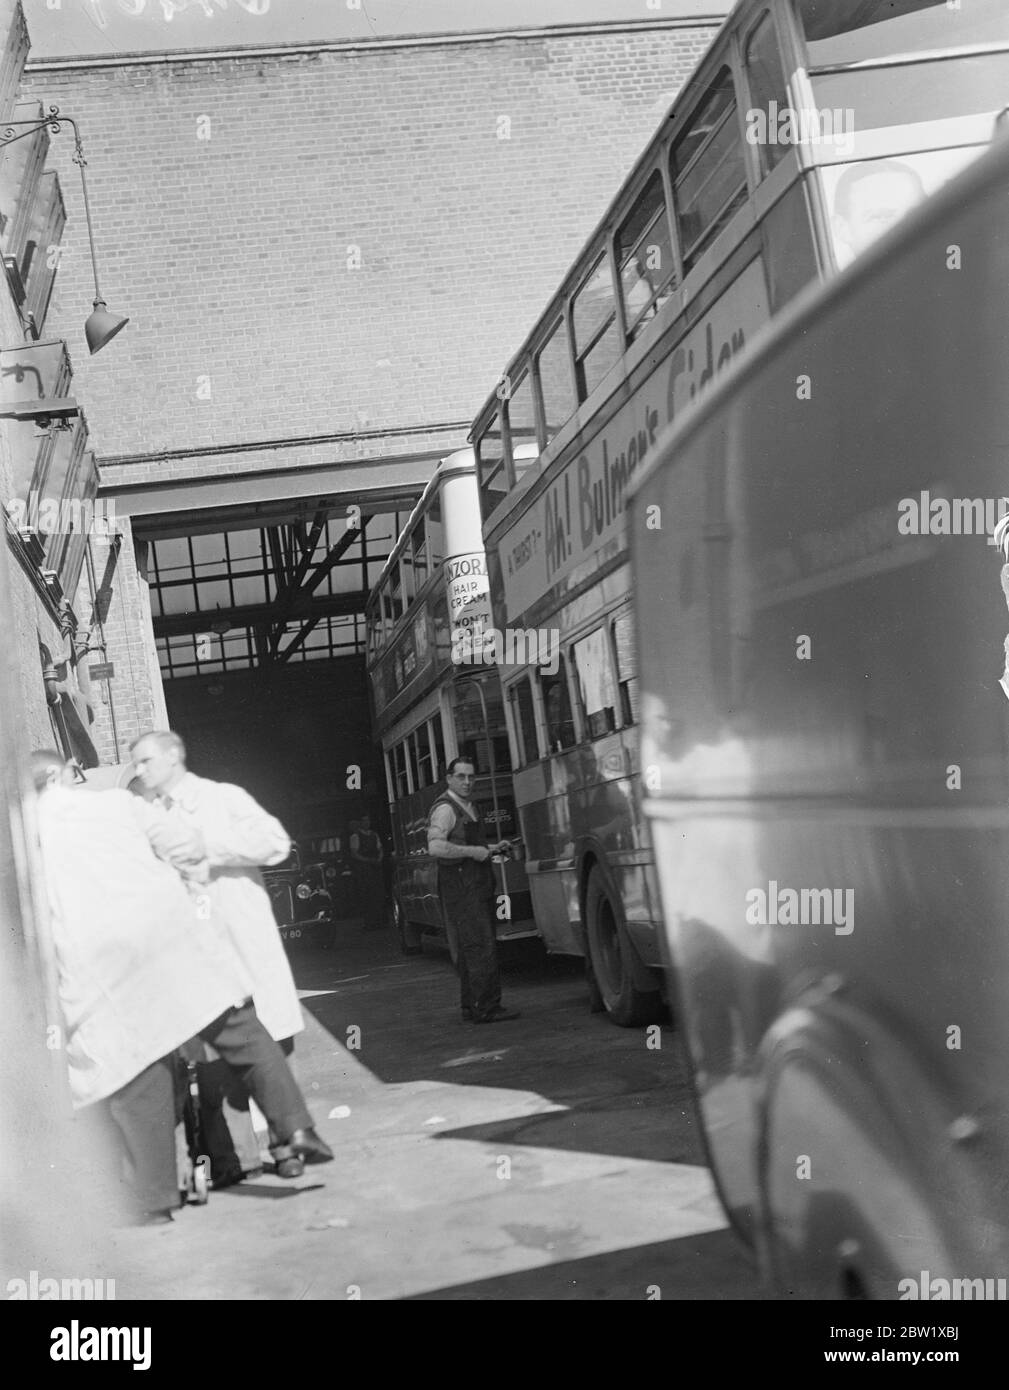 Londons Busse bereiten sich auf die Rückkehr zur Arbeit vor. Die Tausenden Busse Londons, die einen Monat lang im Leerlauf sind, werden für die Rückkehr zur Arbeit (Freitag) nach dem Streik vorbereitet. Foto zeigt, Lackierung eines Busses in Camberwell Garage. 27 Mai 1937 Stockfoto